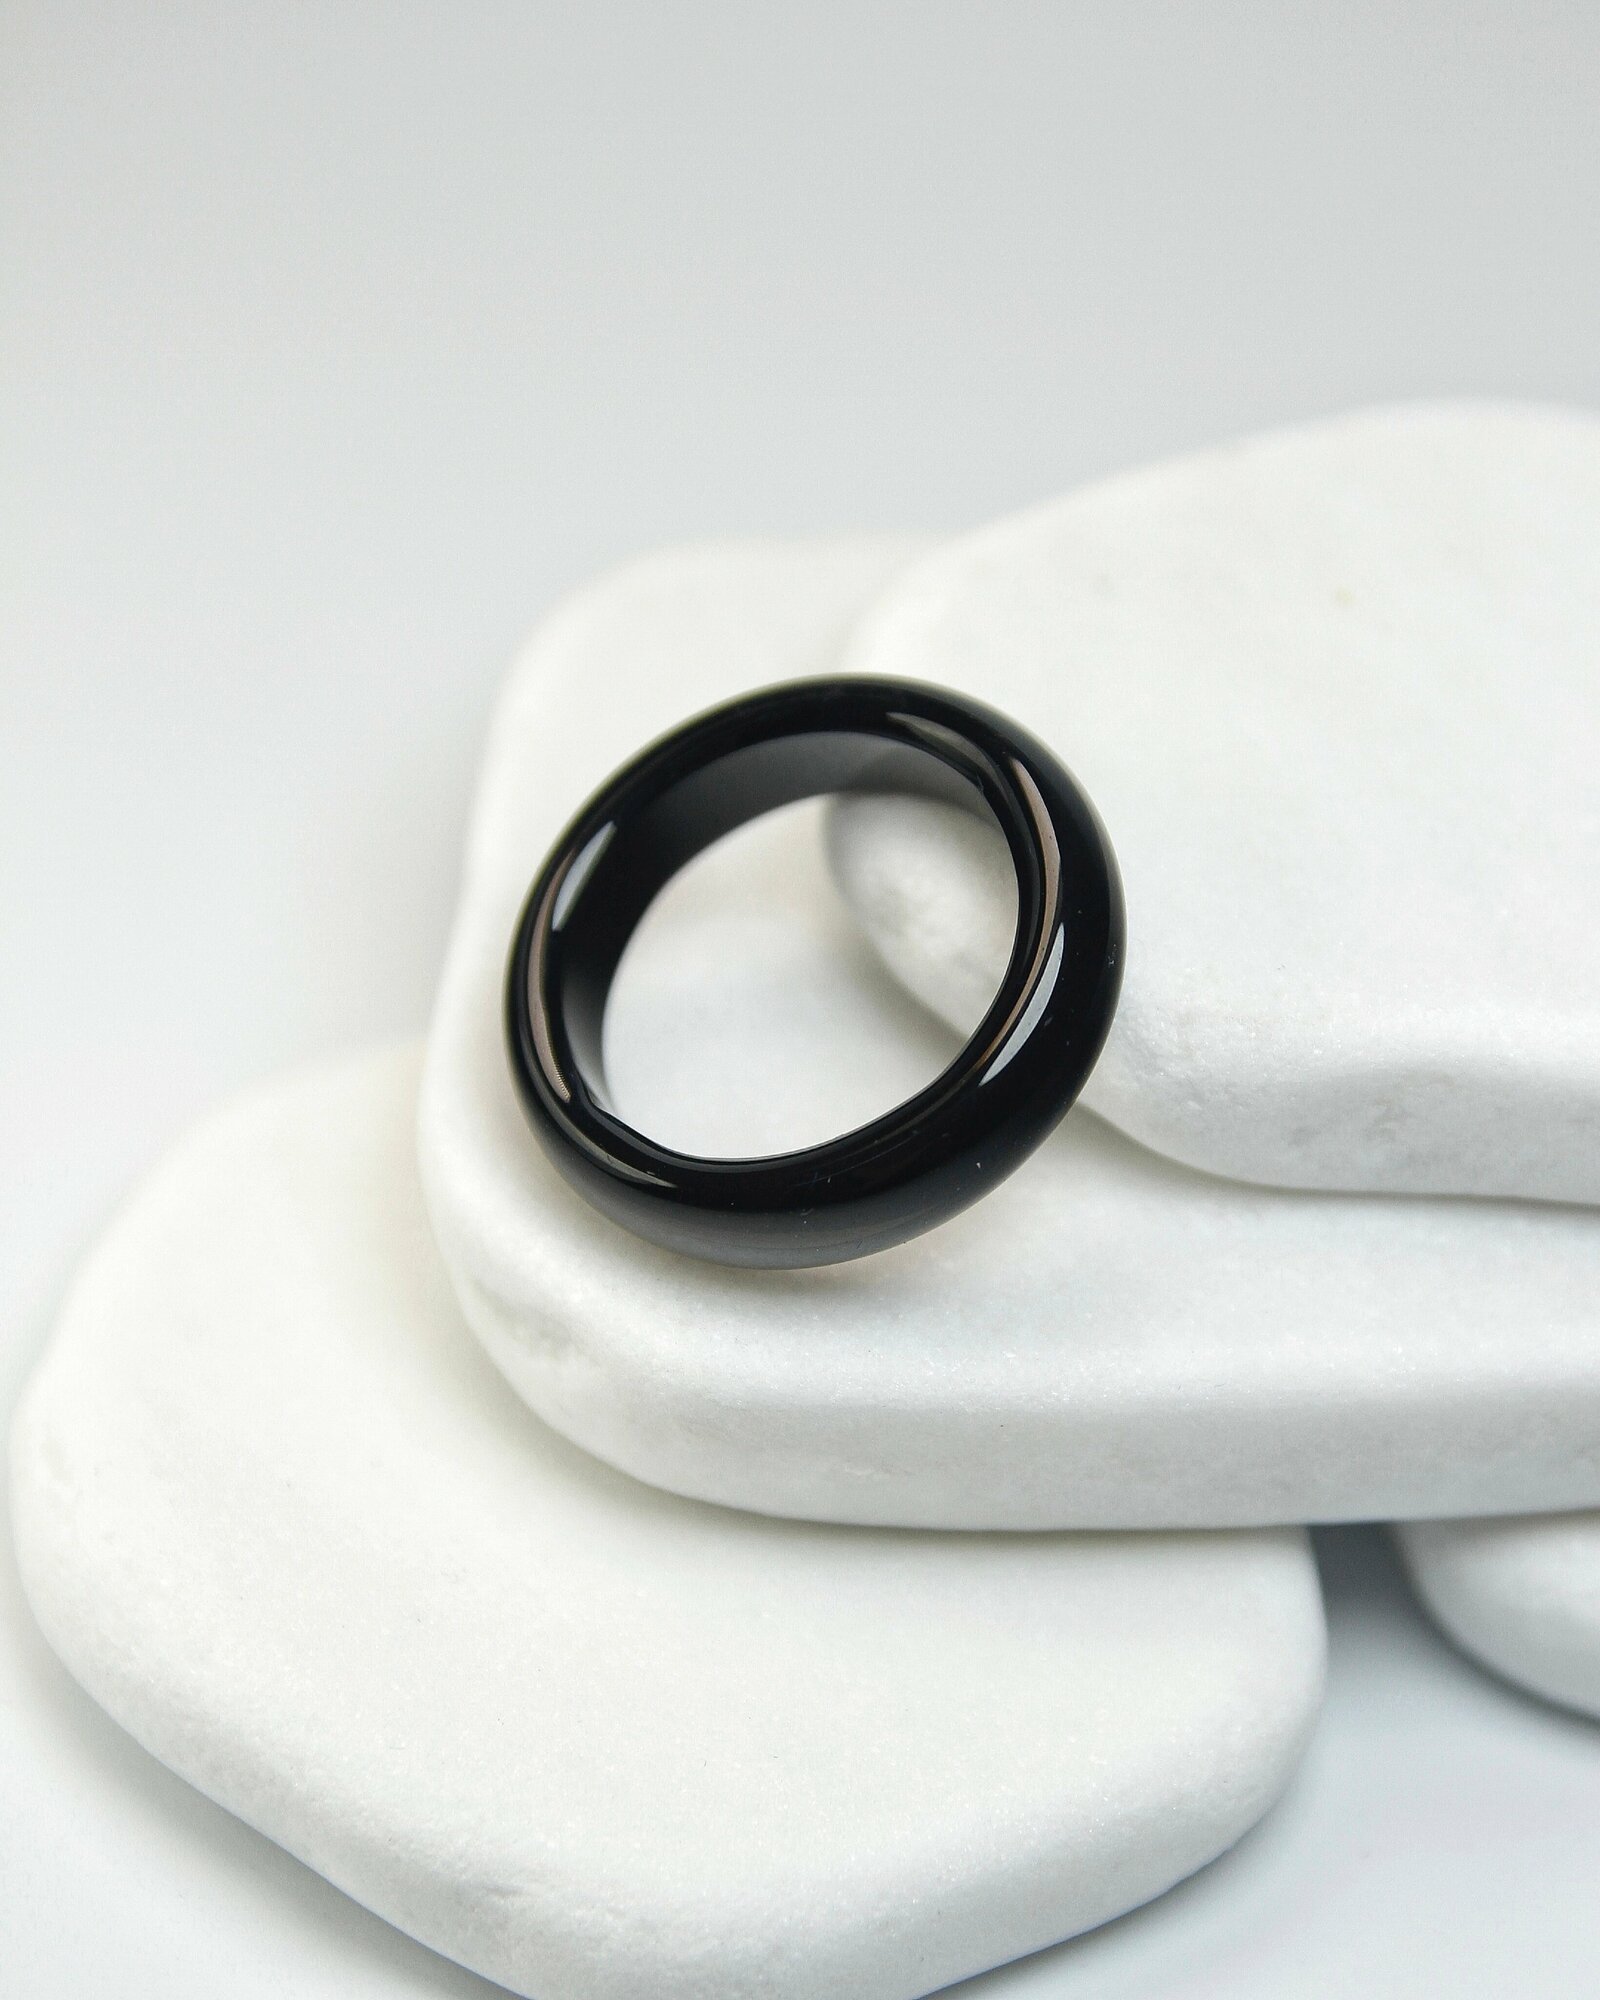 Кольцо-кулон Grow'N Up Кольцо из натурального камня Черный агат, для душевного равновесия, размер 16-17, агат